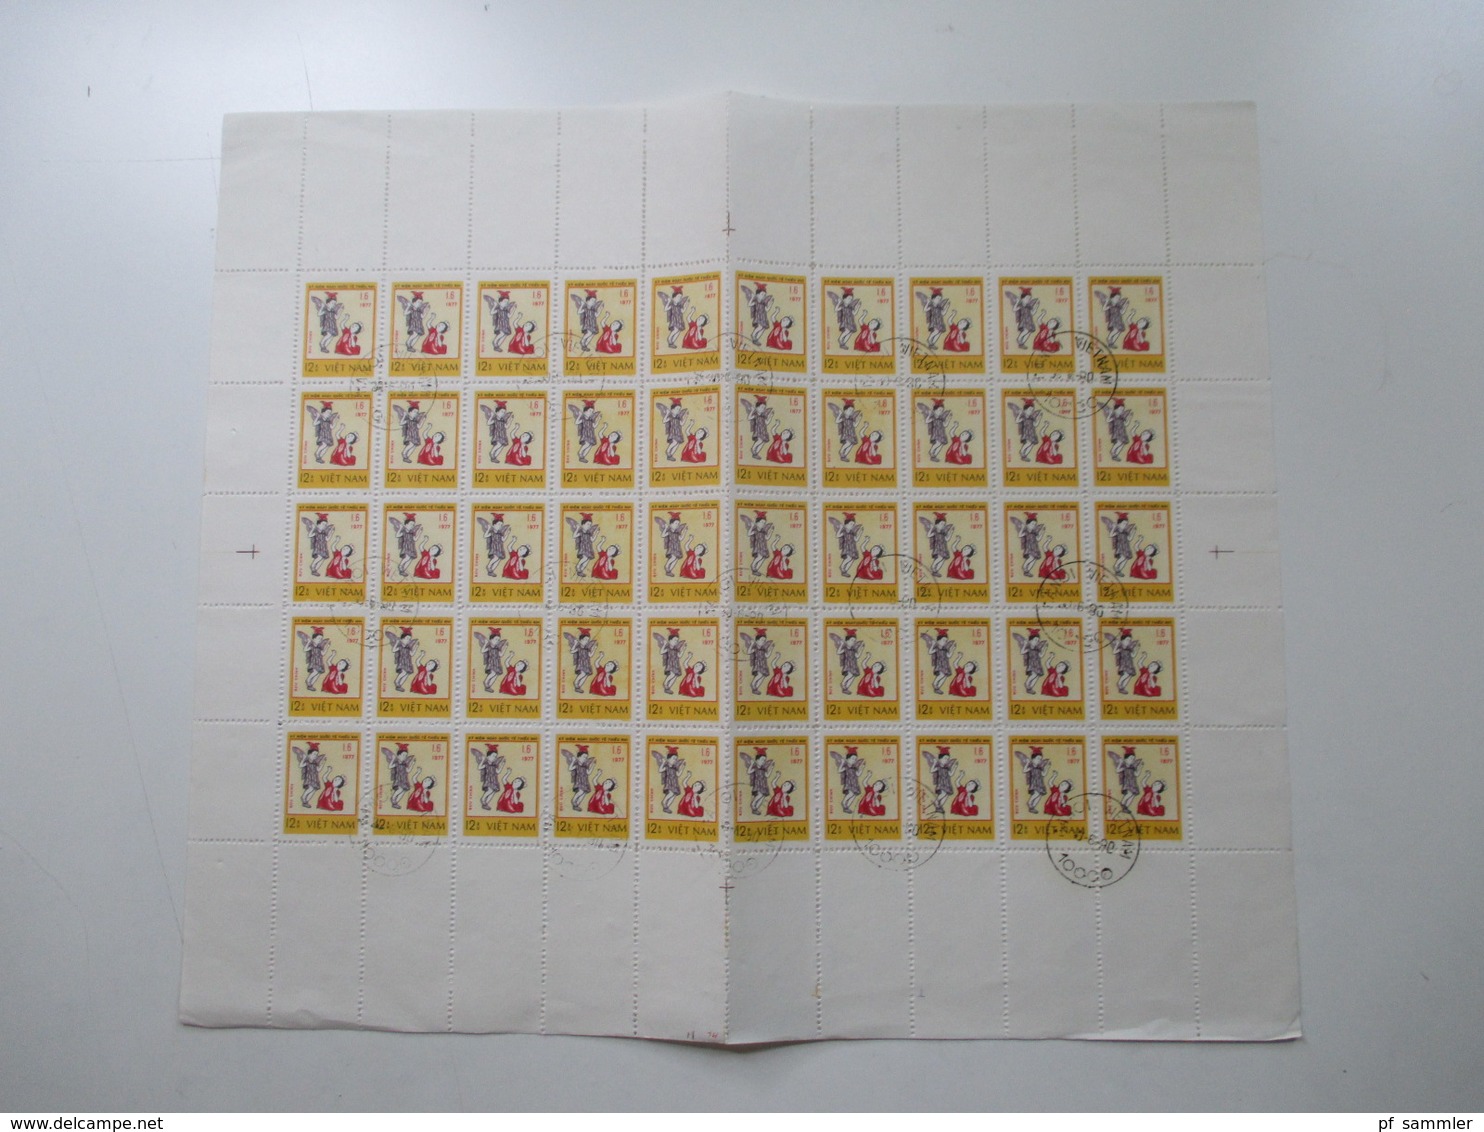 Vietnam ca. 1979 -80er Jahre Bogenposten / Bogenteile mehr als 75 Stk / über 4000 Marken gestempelt! Fundgrube! Hoher KW